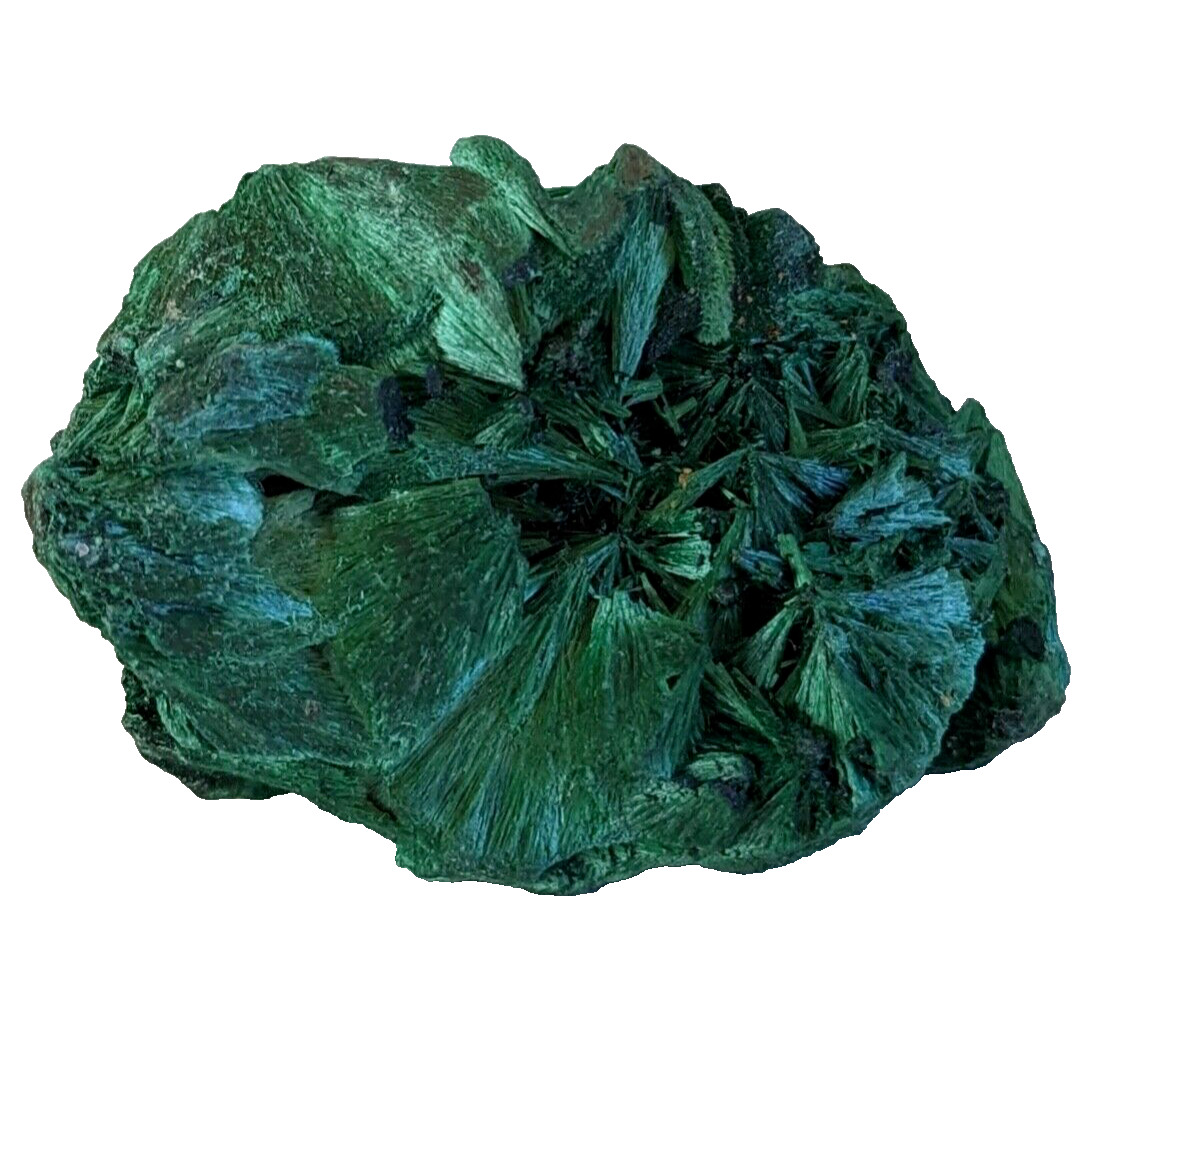 Fibrous Chatoyant Malachite from D R Congo-Stone- Mineral Specimen #9580